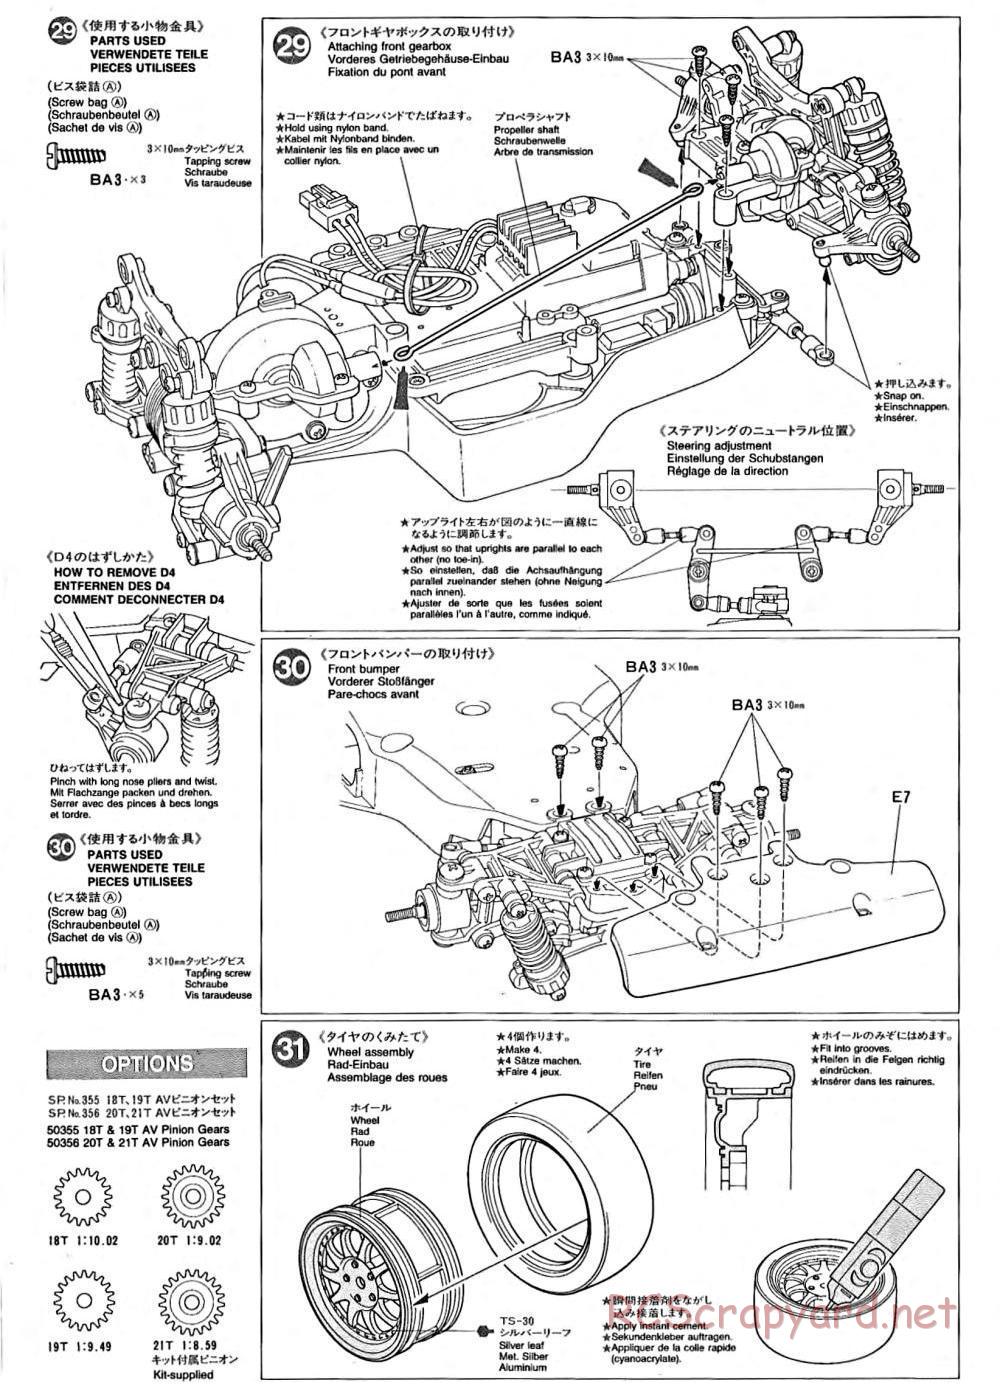 Tamiya - TA-02 Chassis - Manual - Page 11